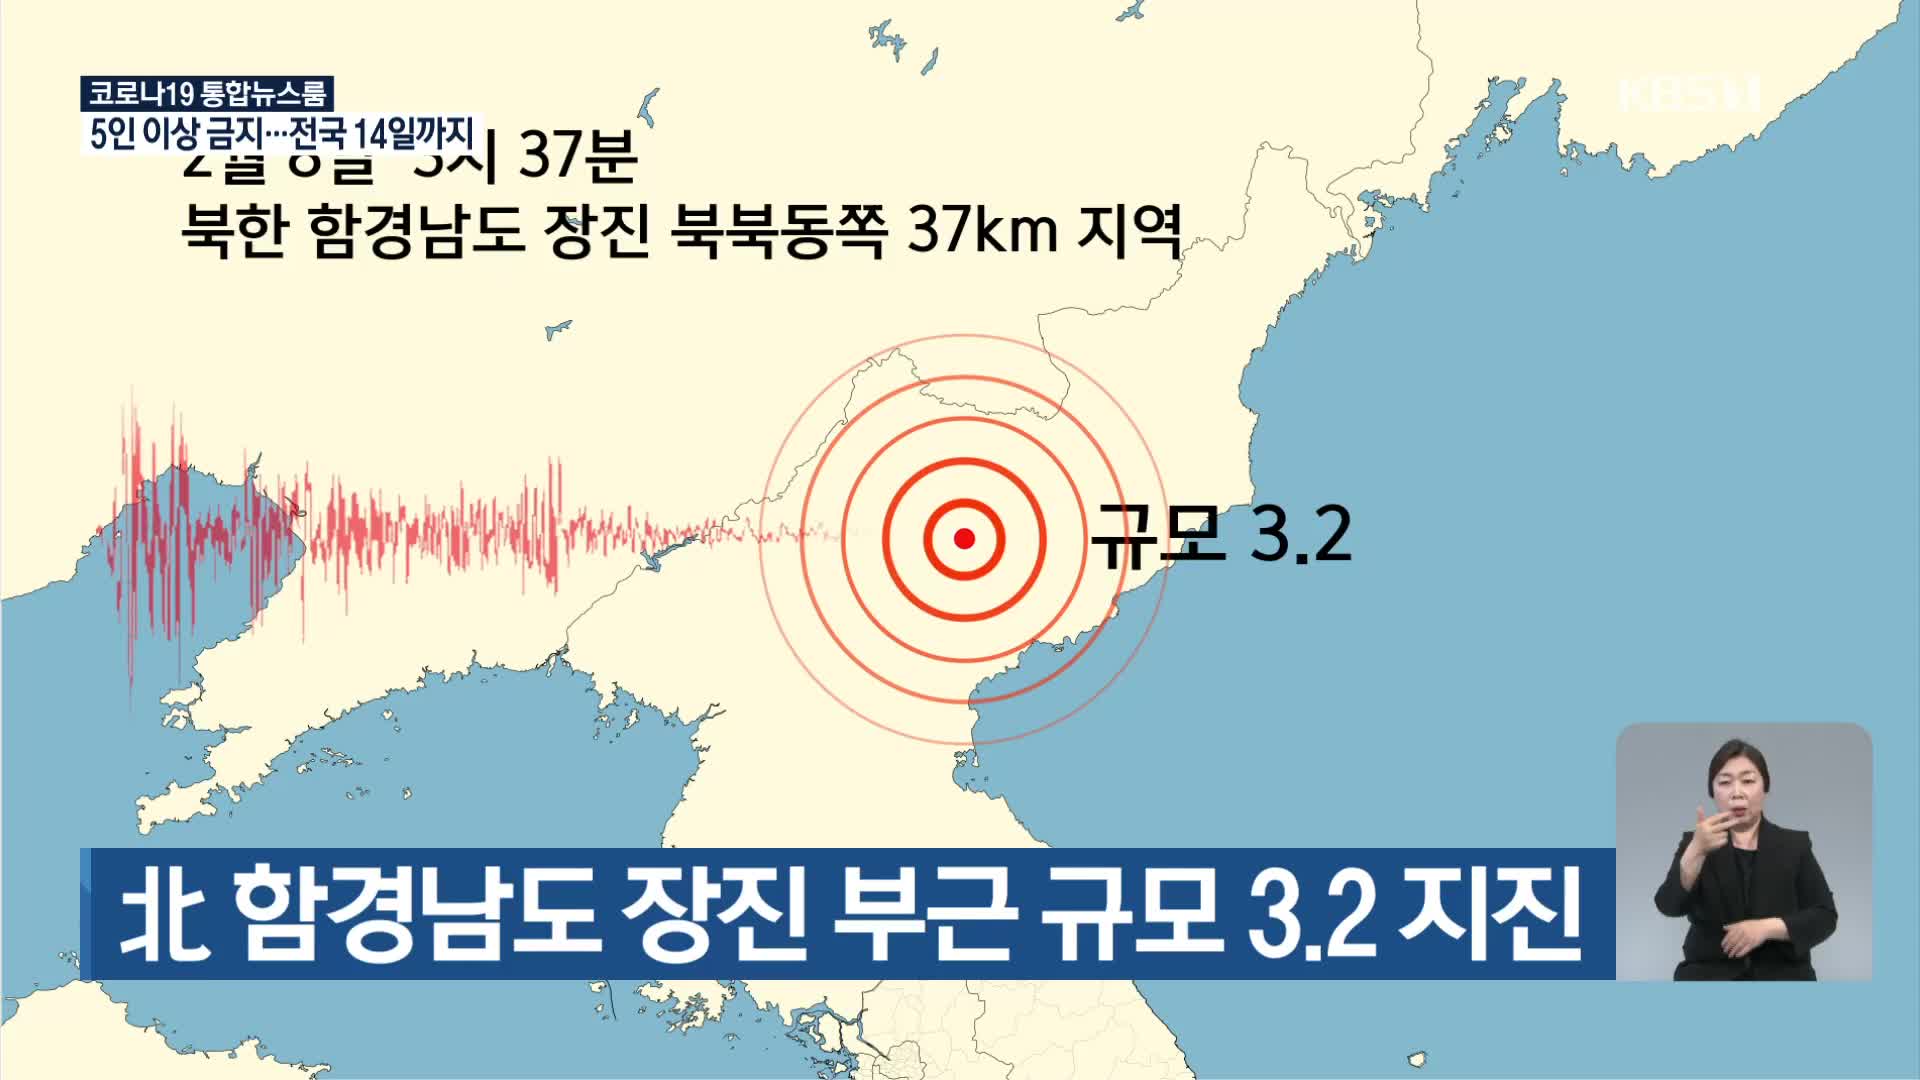 北 함경남도 장진 부근 지역에서 규모 3.2 지진